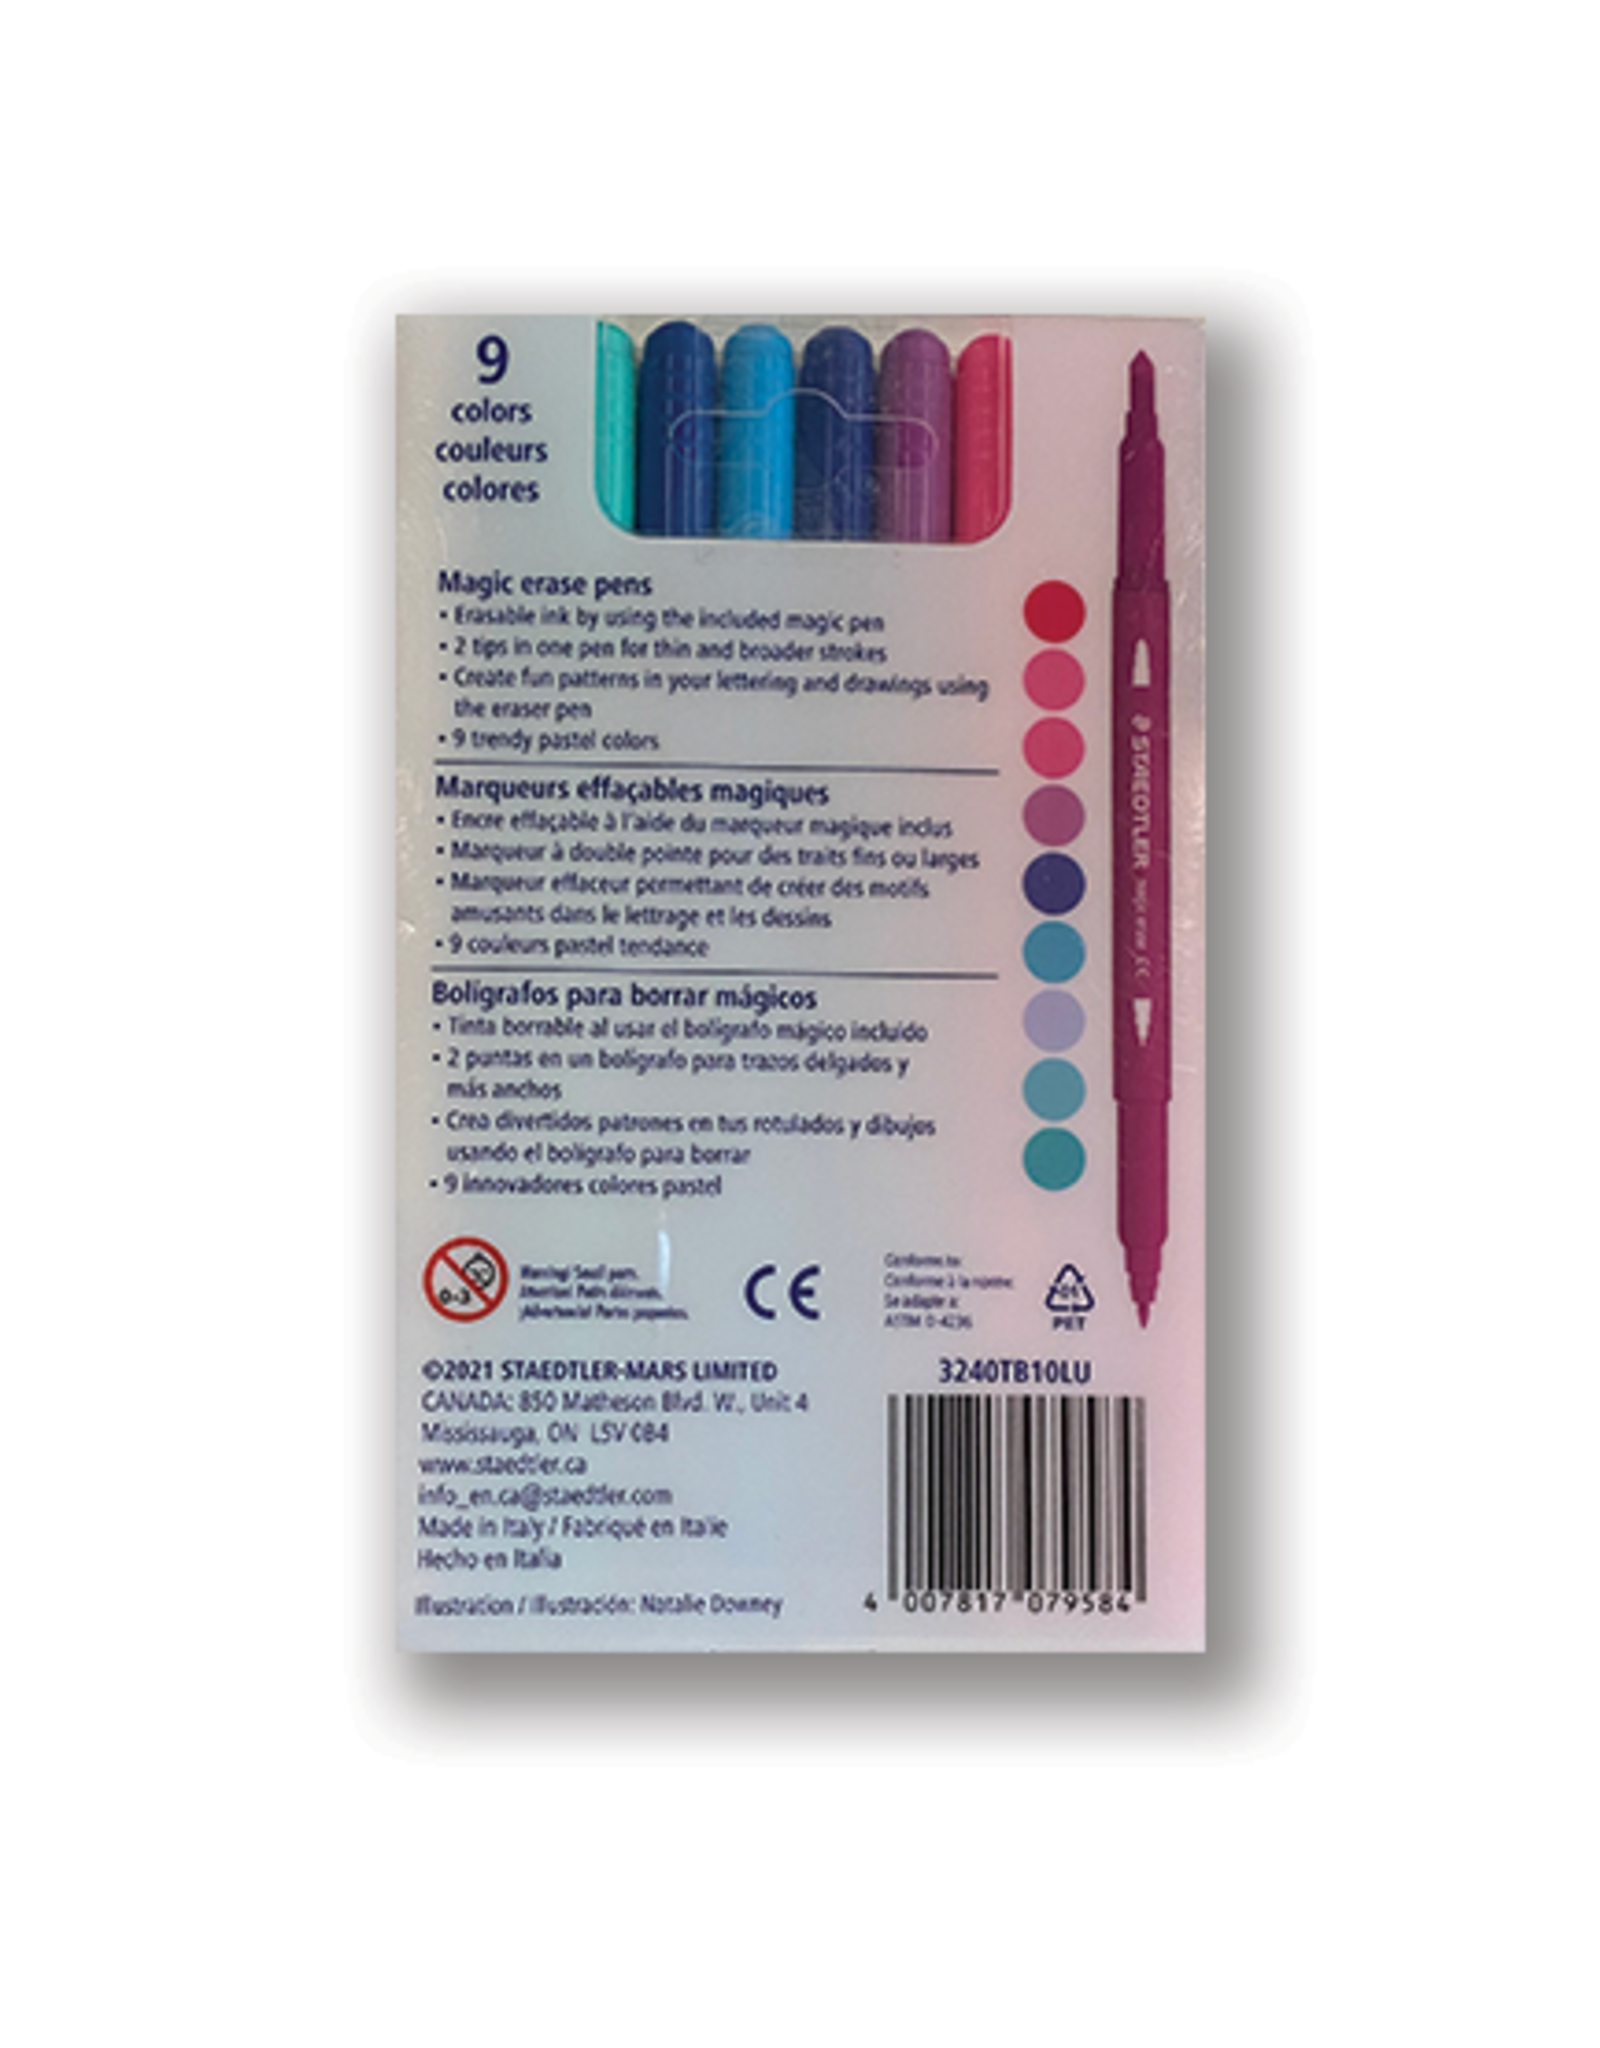 10 Magic Color Pens, Erasable Color Pens